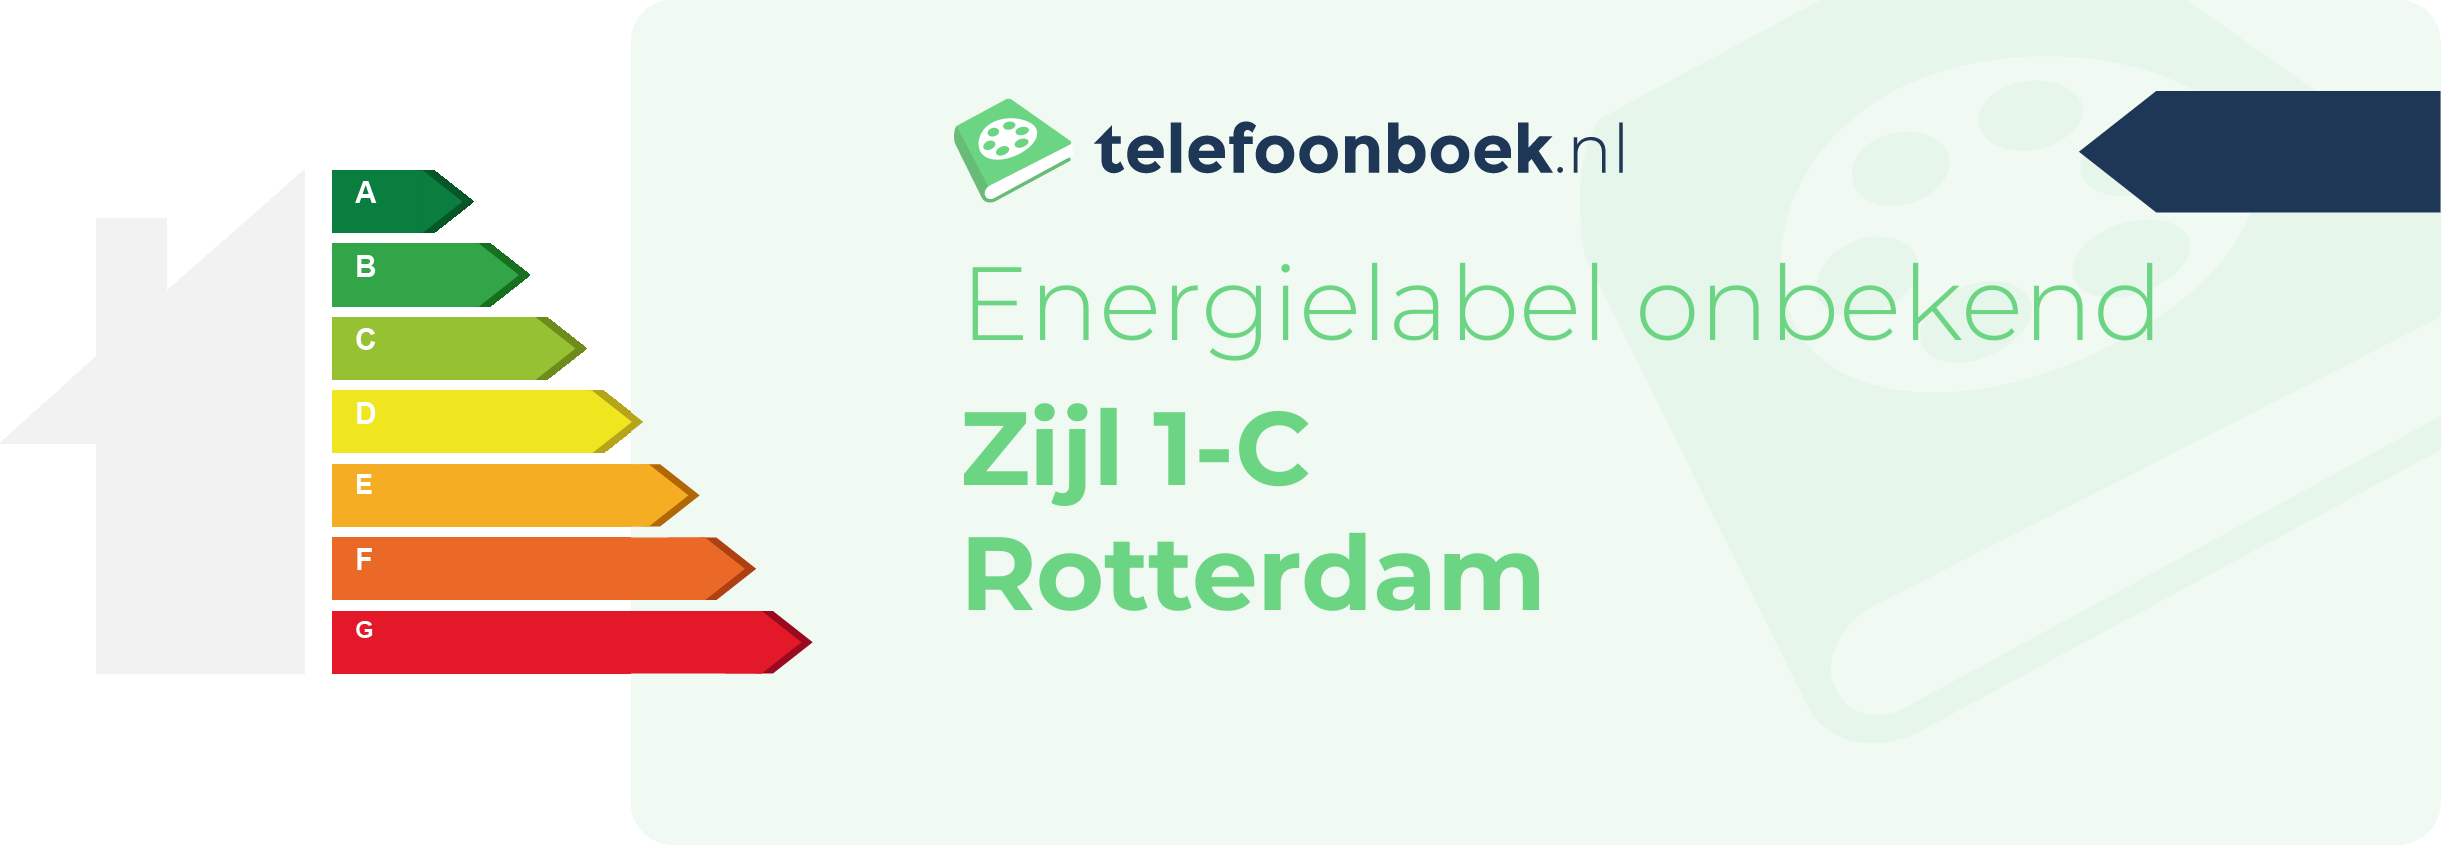 Energielabel Zijl 1-C Rotterdam